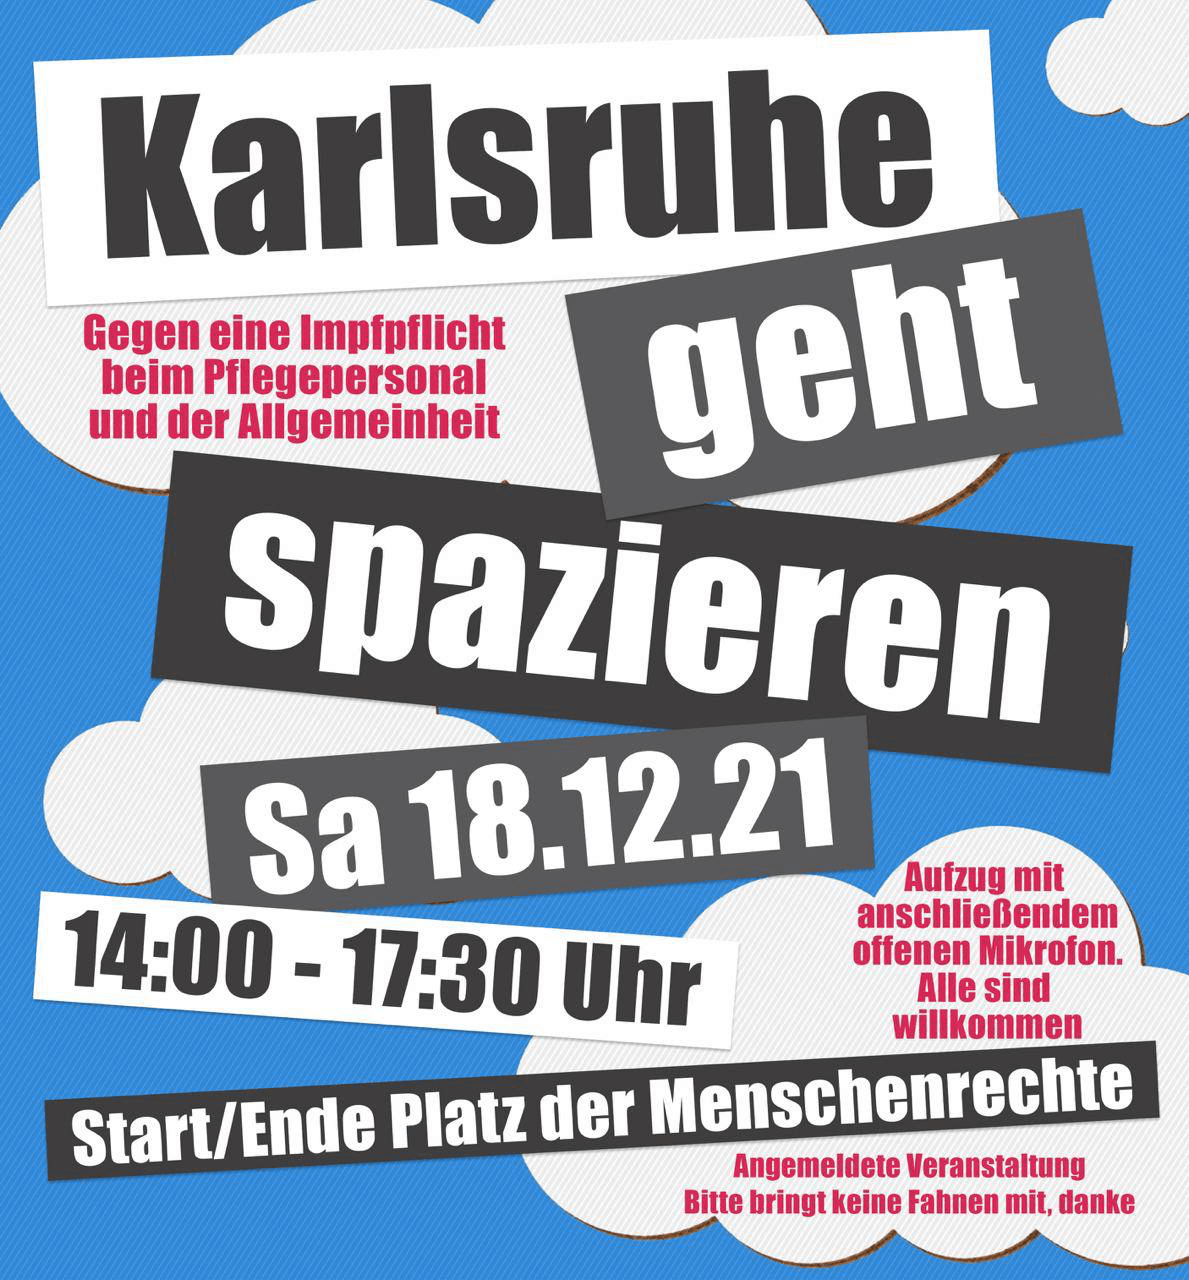 Karlsruhe geht spazieren - Kundgebung mit Aufzug - Karlsruhe Platz der Menschenrechte 18.12.2021 14:00 Uhr